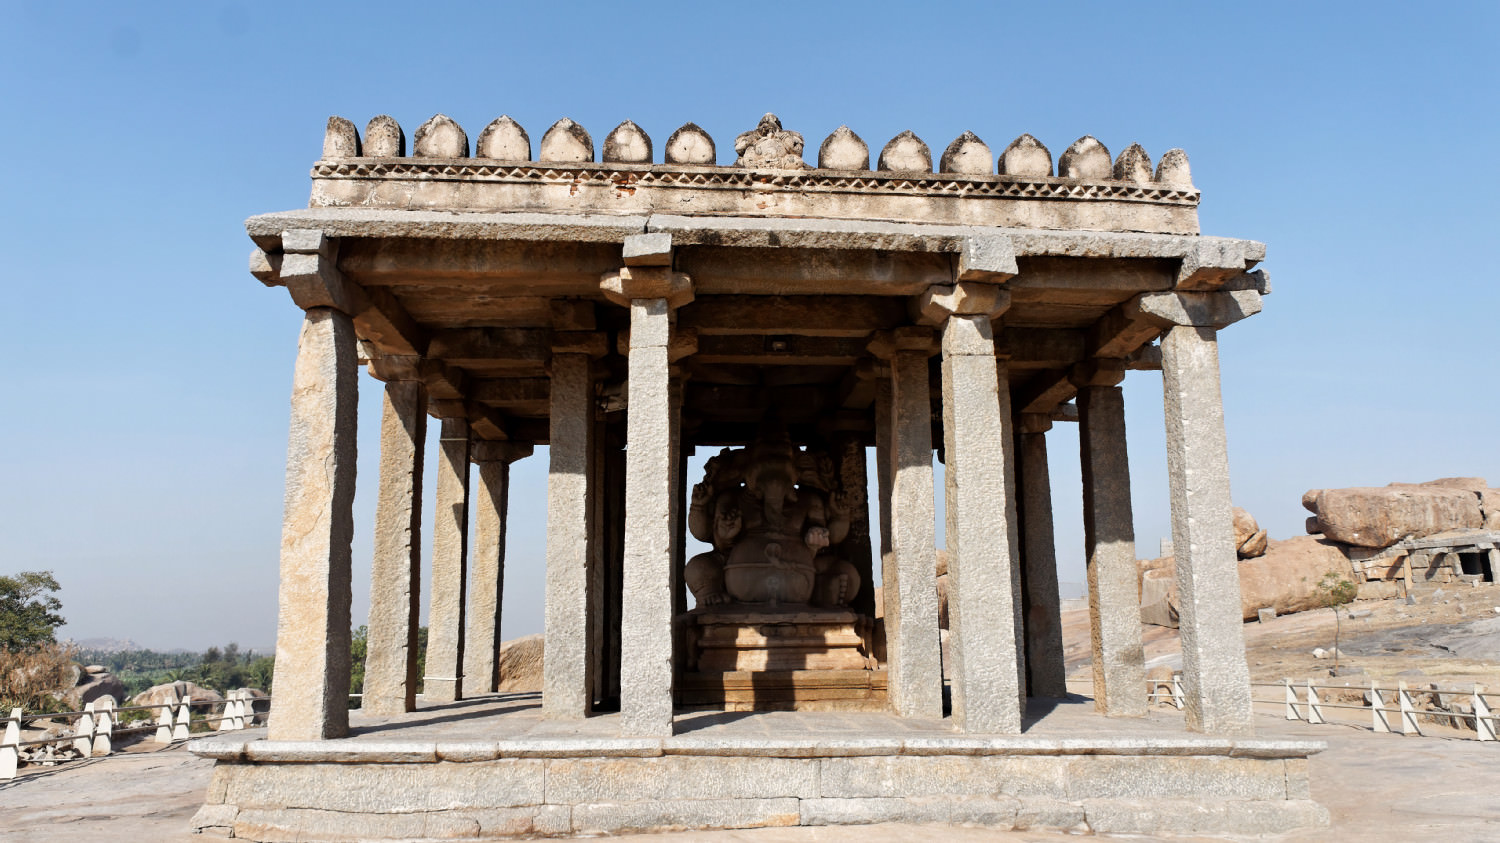 Ηampi, Karnataka (UNESCO)